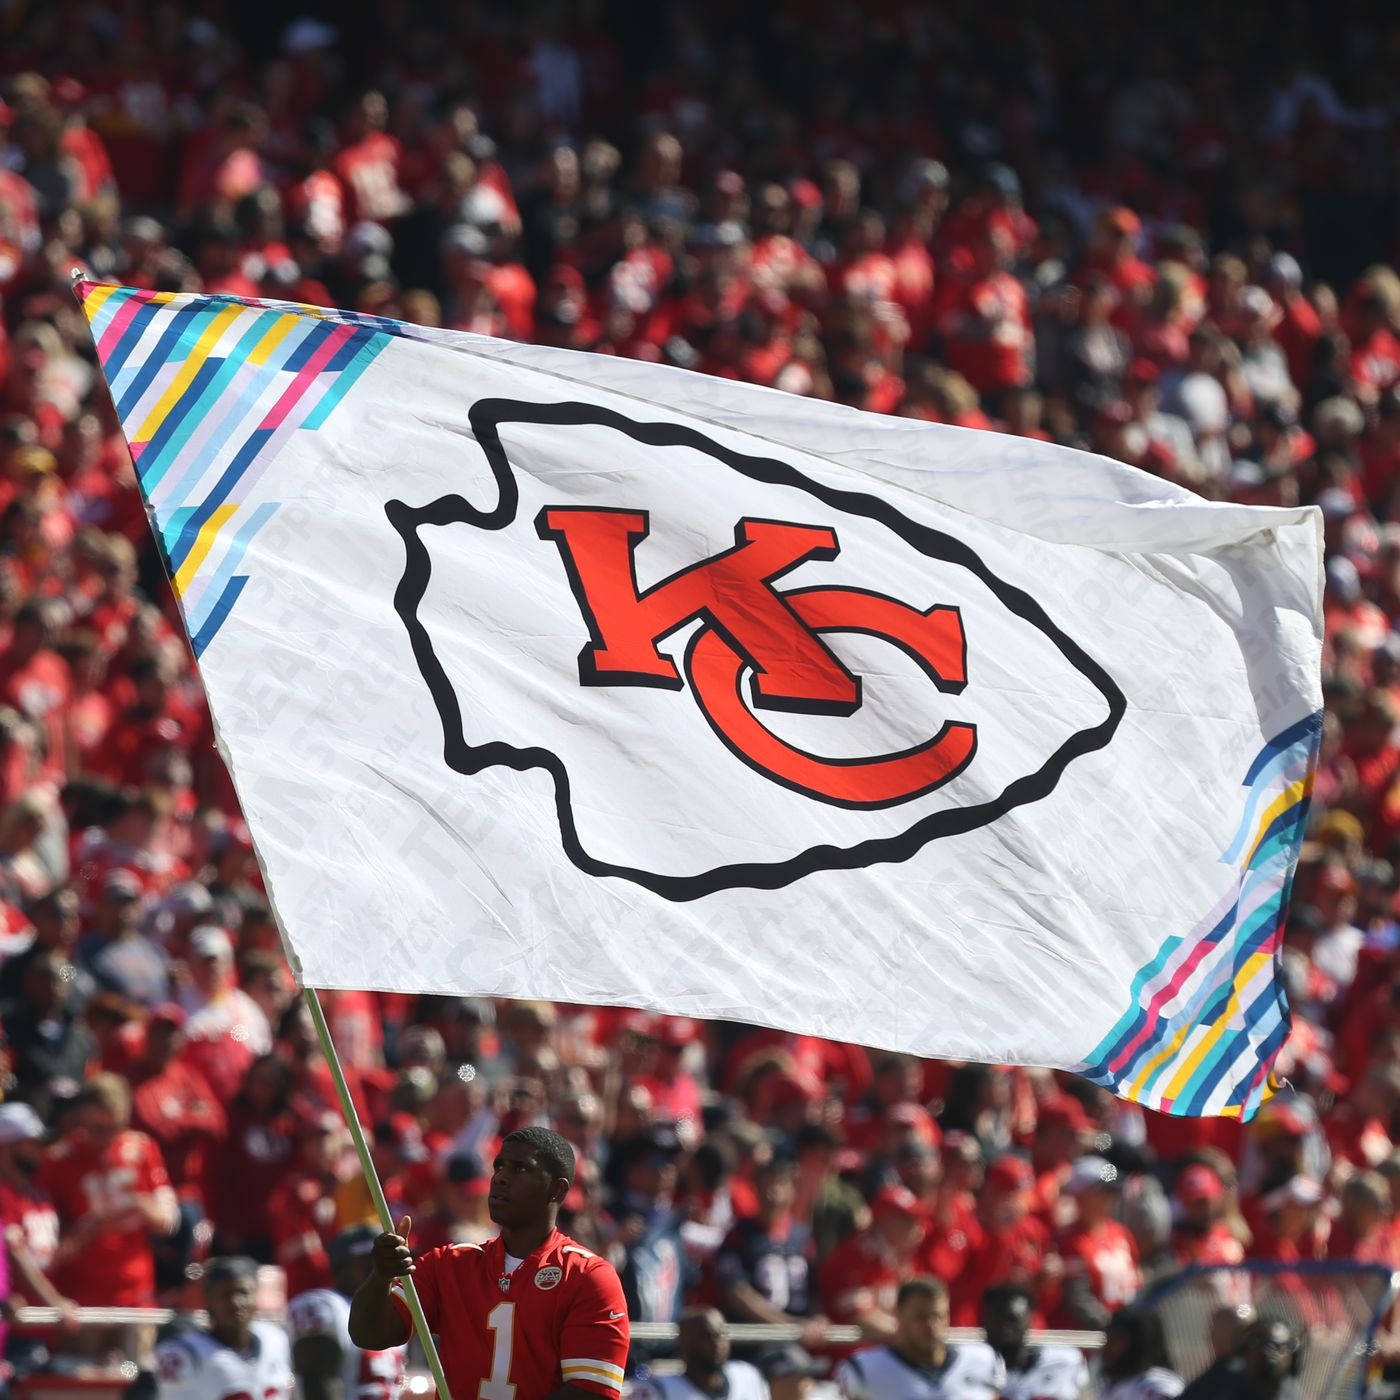 Bandieradell'orgoglio Con Il Logo Dei Kansas City Chiefs. Sfondo